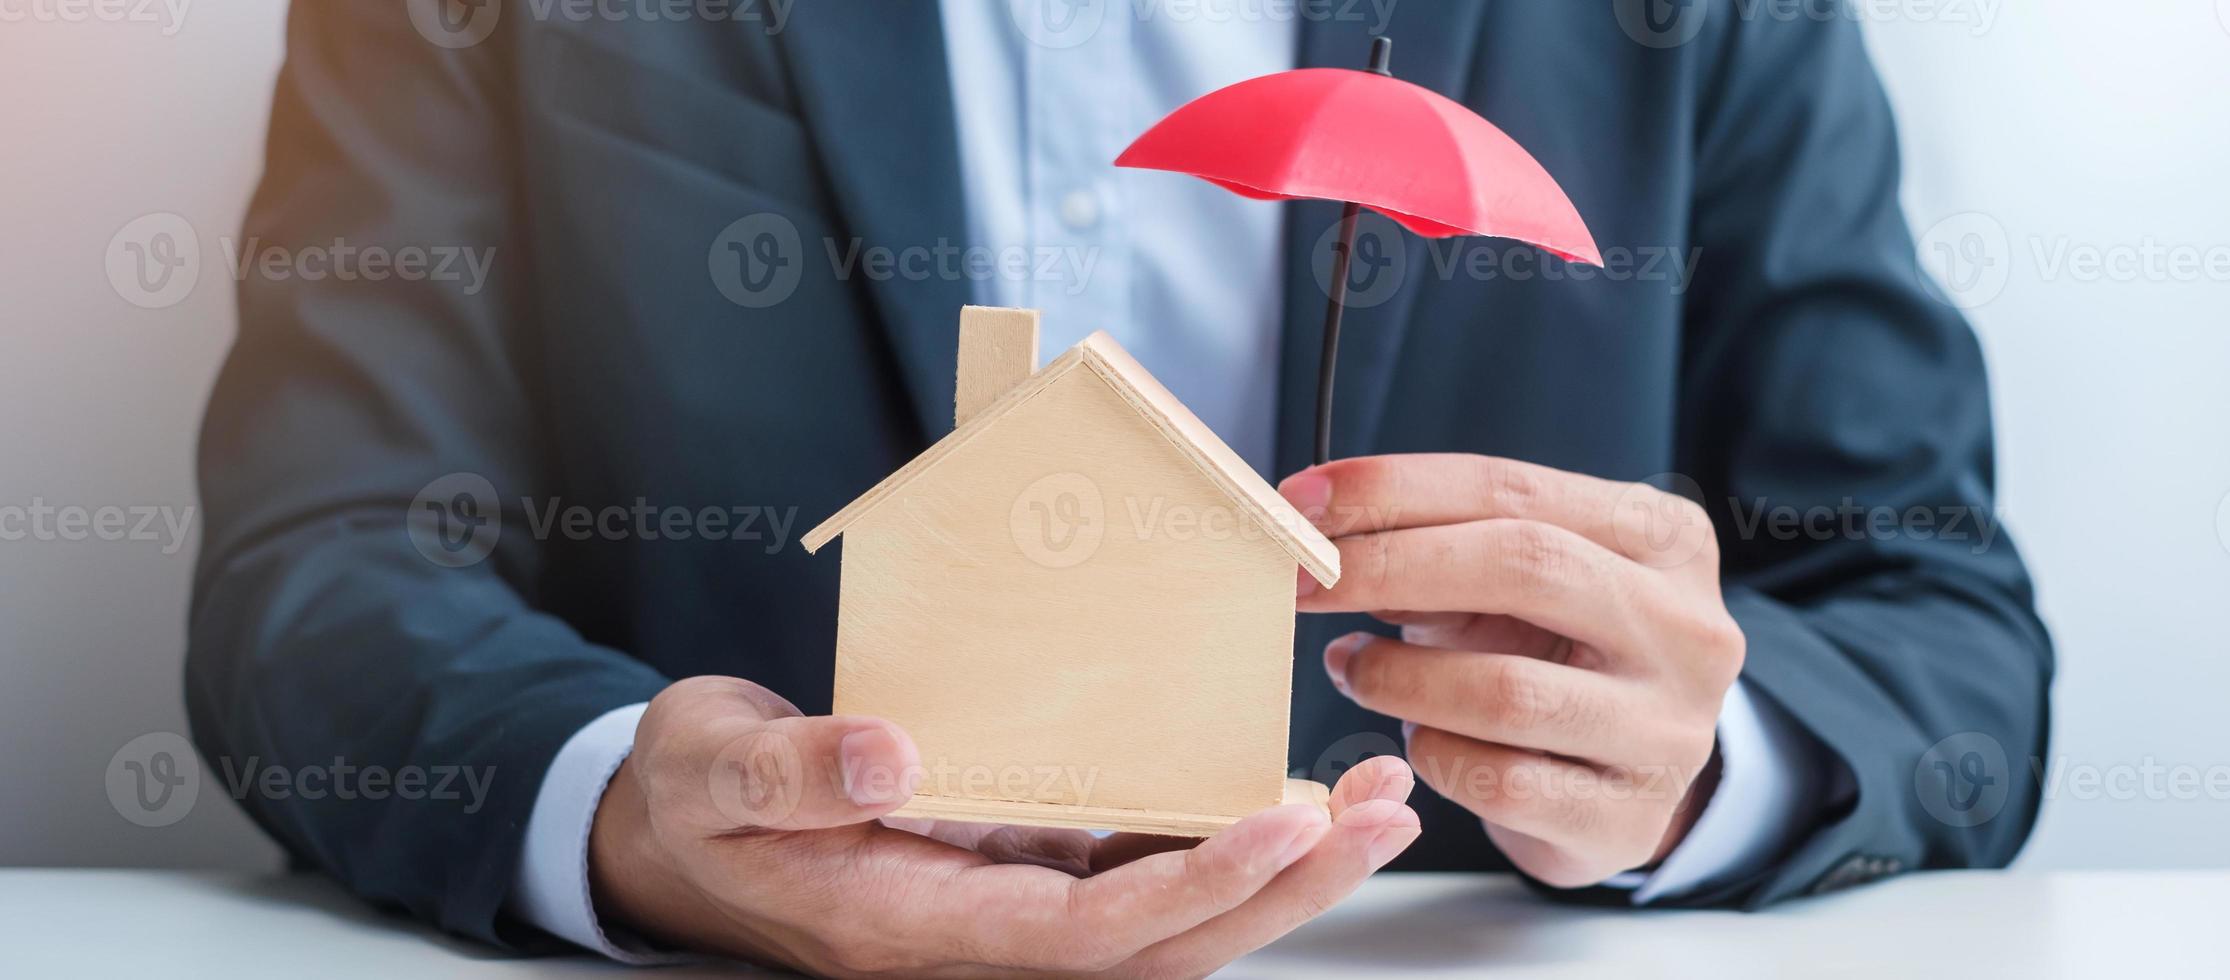 mão de empresário segurando o modelo de casa de madeira da tampa do guarda-chuva vermelho. conceitos imobiliários, seguros e imobiliários foto